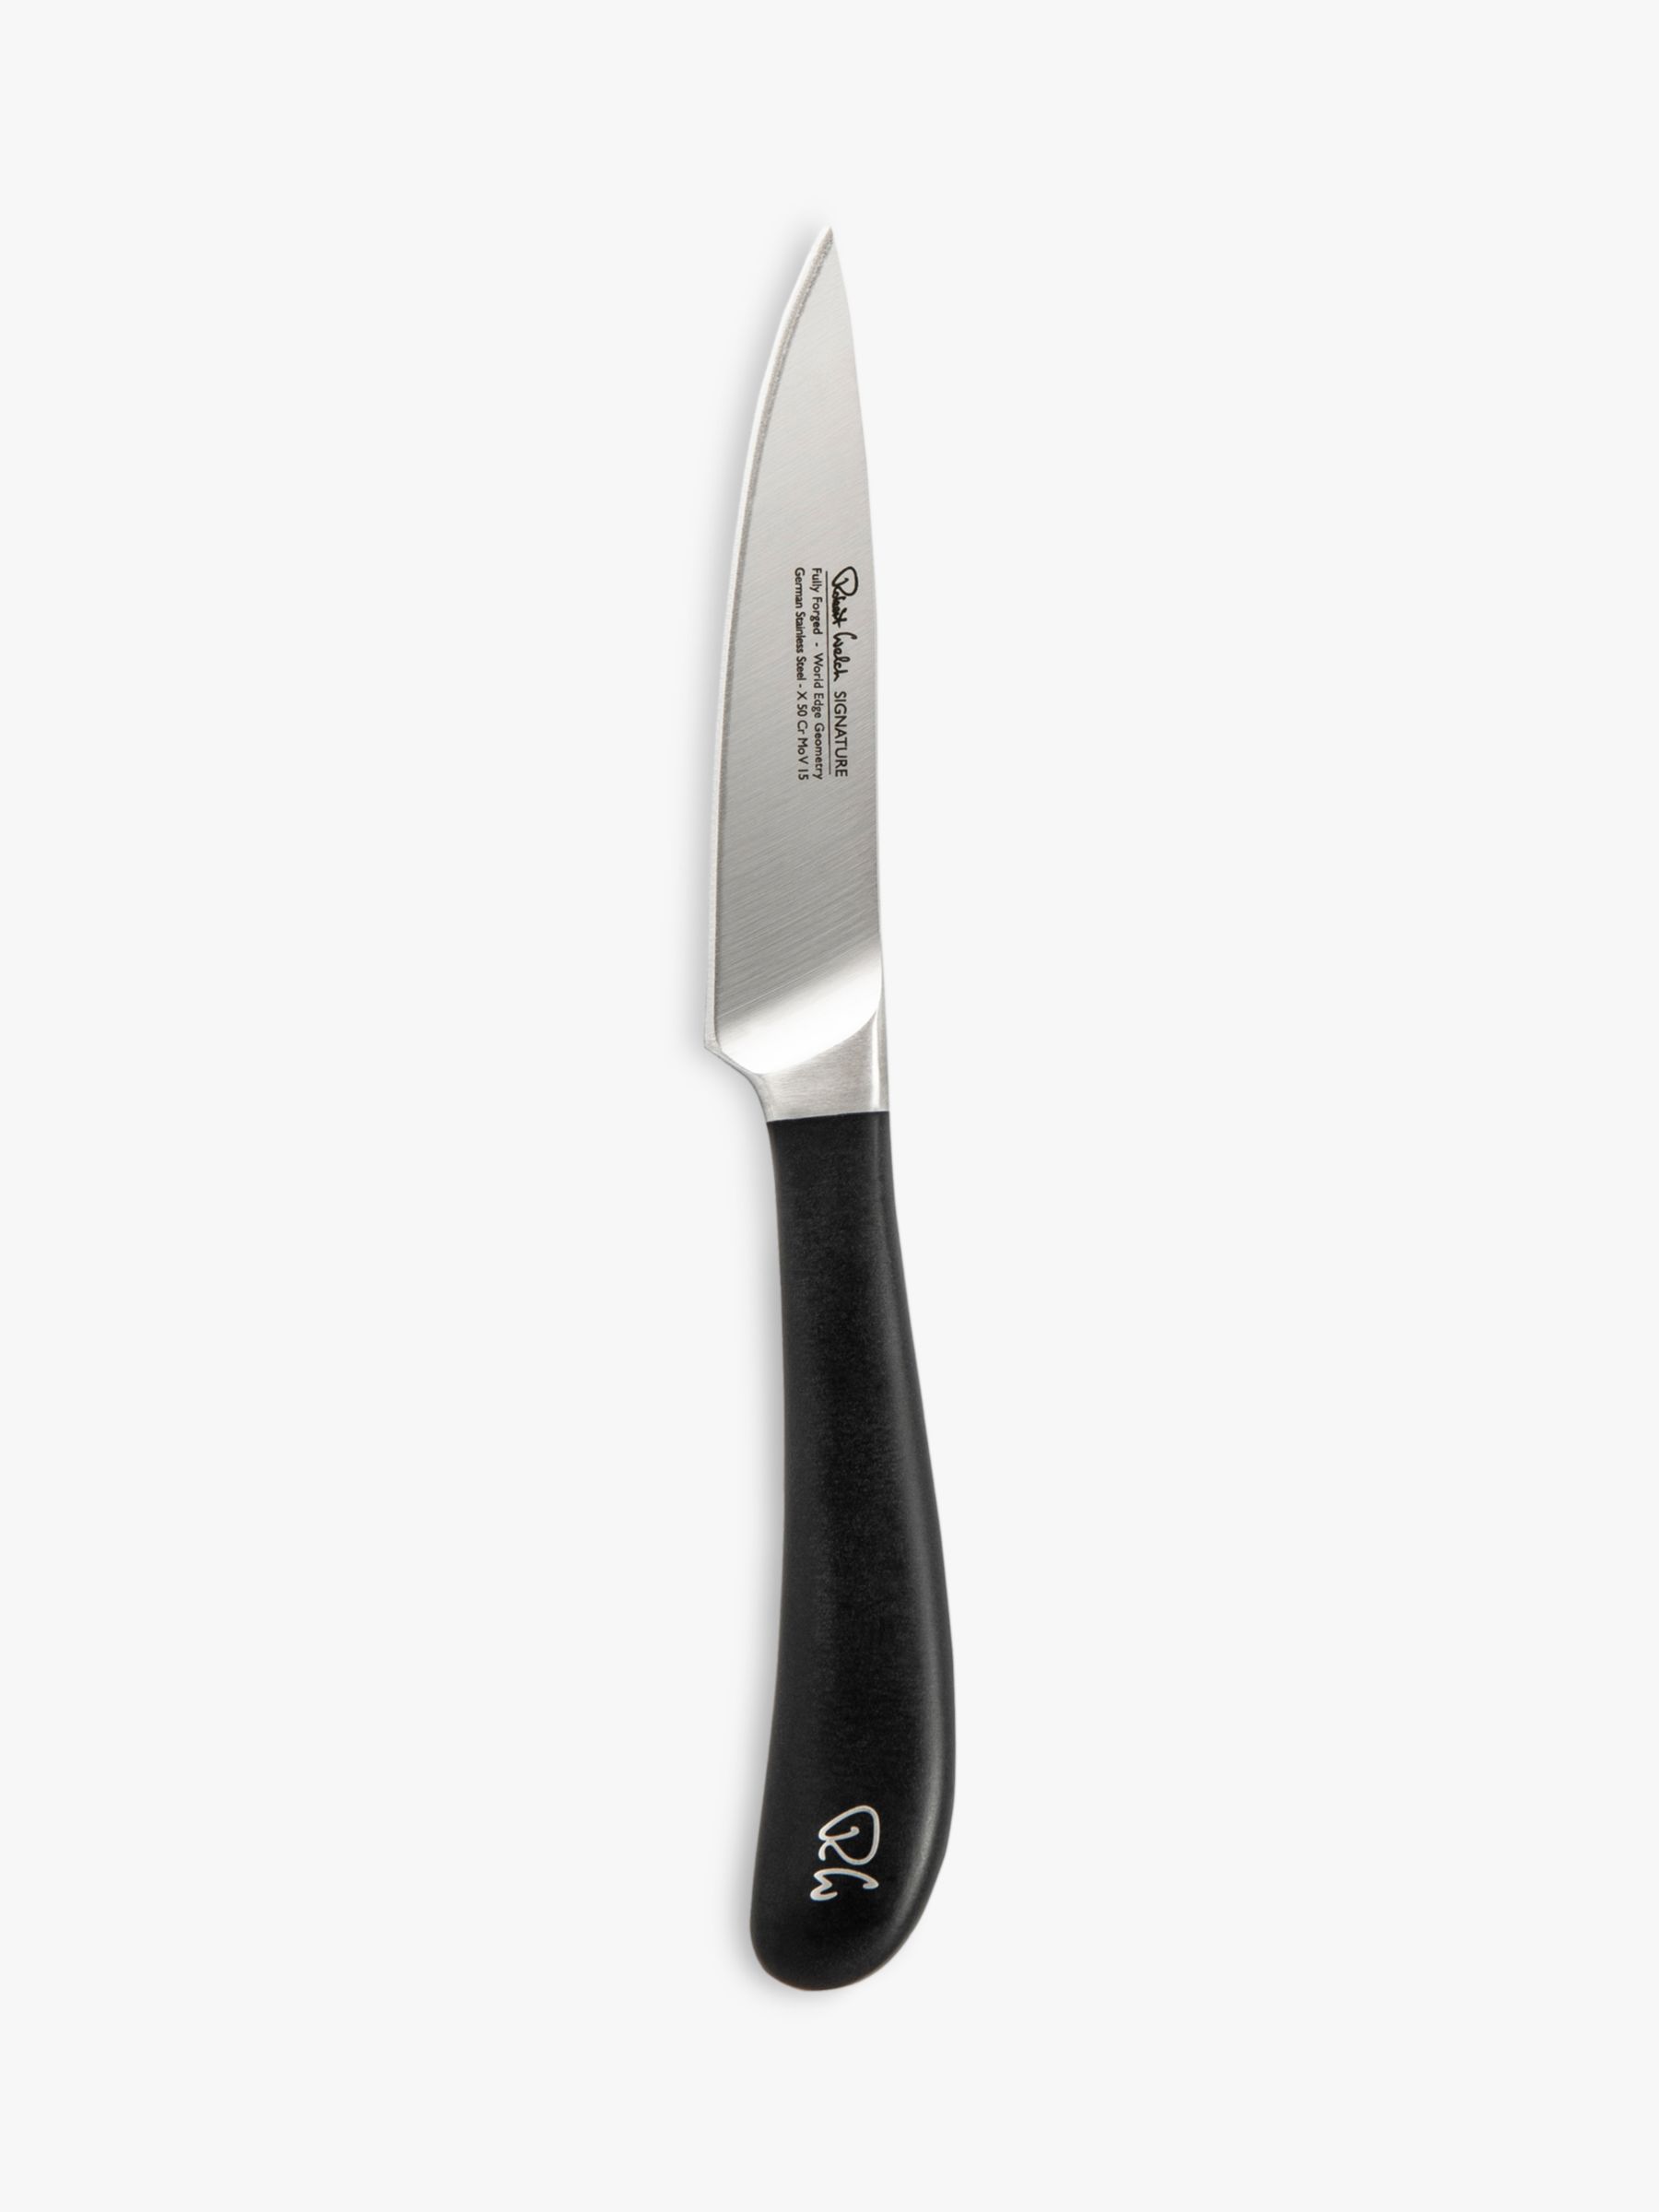 Кухонные ножи для овощей. Ножи Robert Welch Signature 14 см. Sigsa2034 нож Robert Welch. Нож шеф-повар 4. Robert Welch Honeybourne.